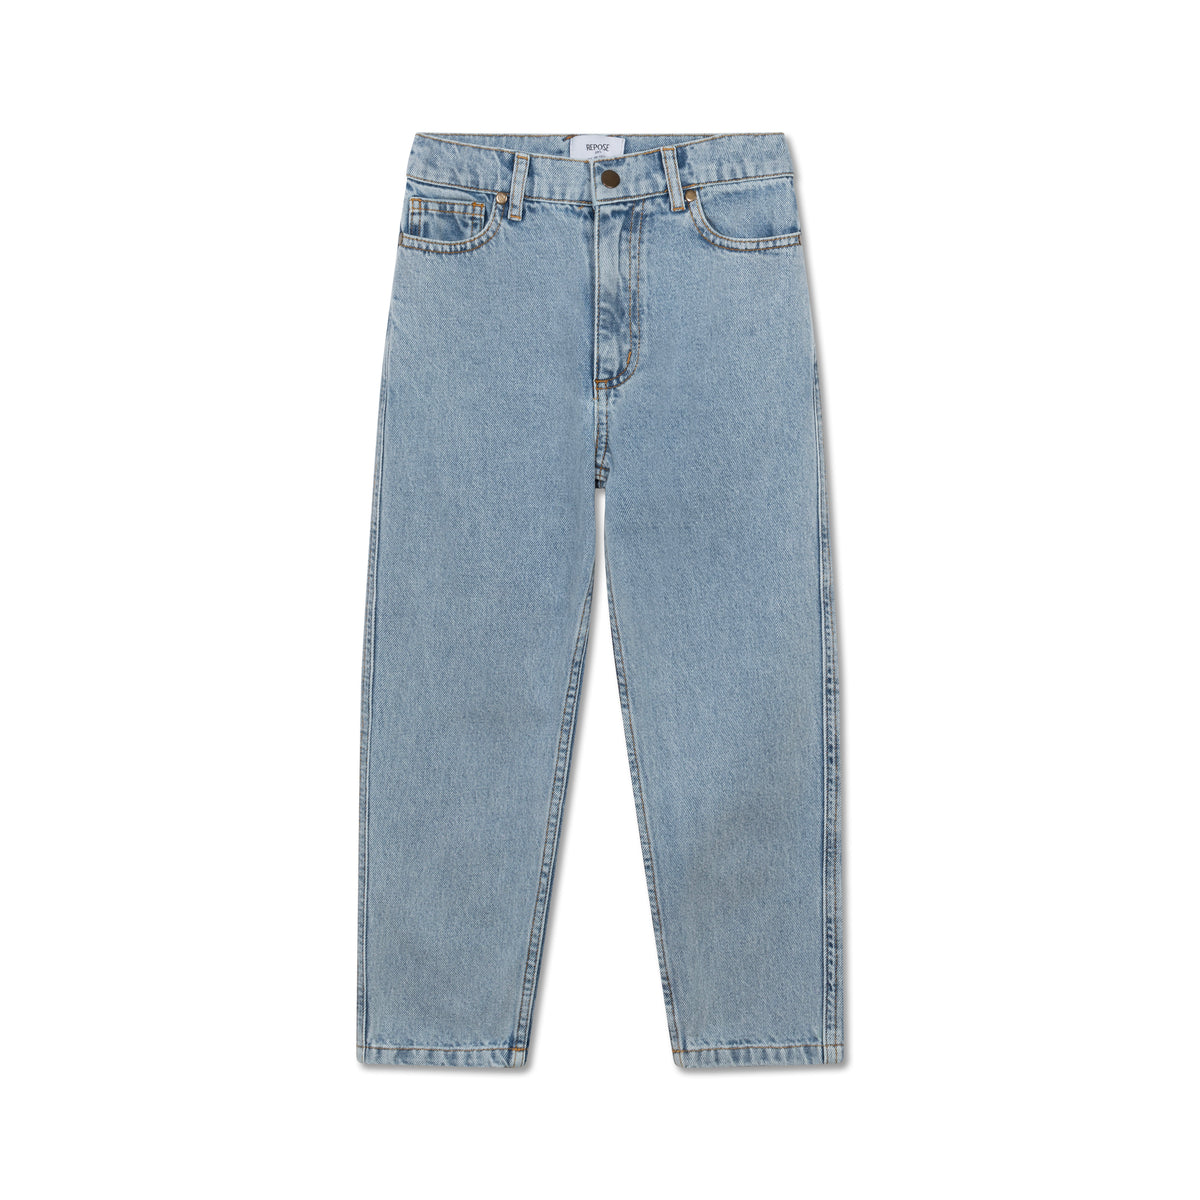 5 Pocket jeans mid washed blue